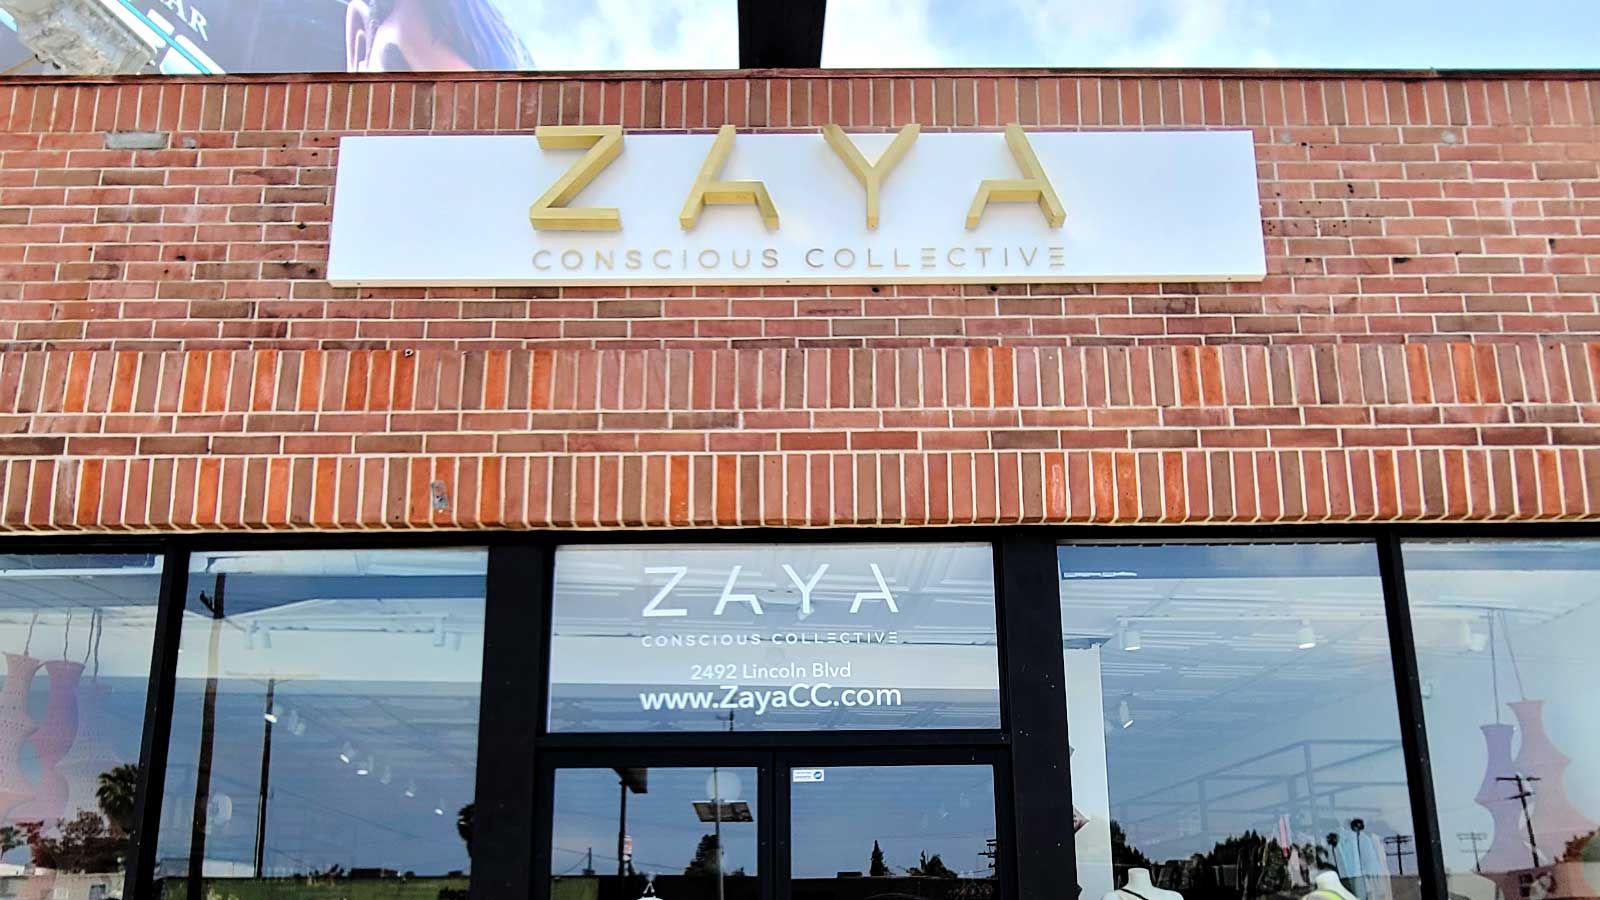 ZAYA Conscious Collective store sign mounted on the facade